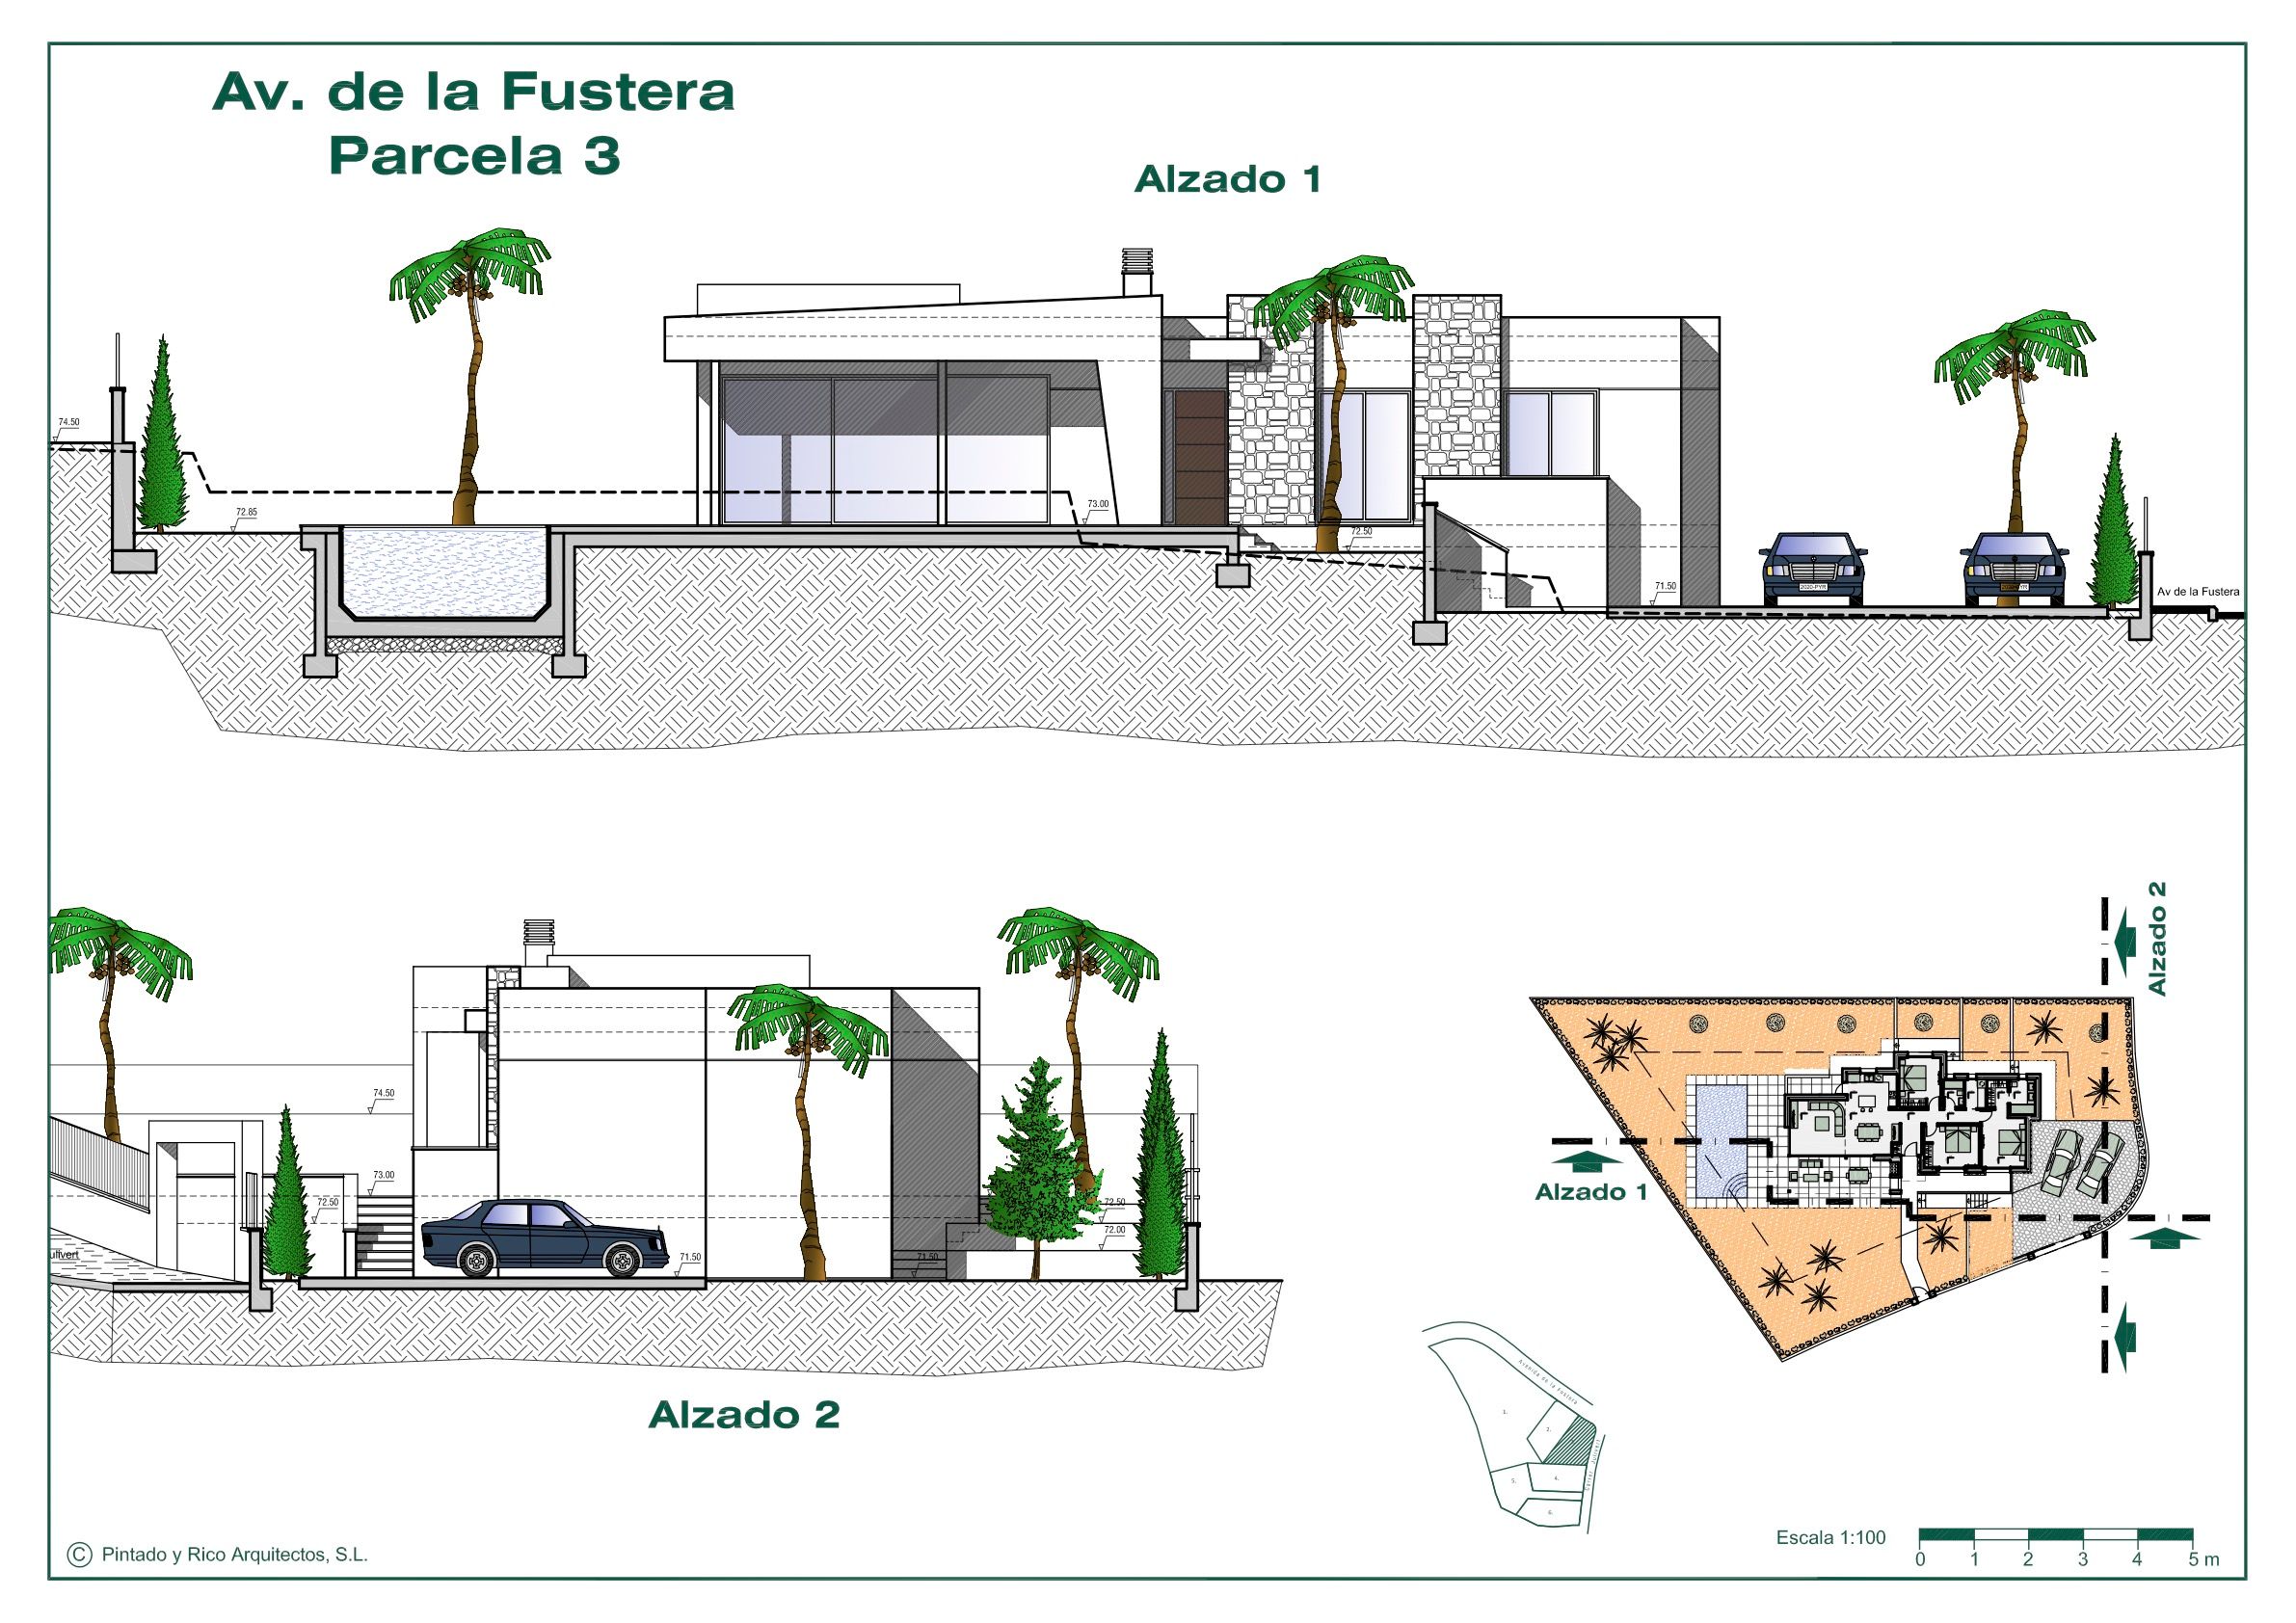 Moderne nieuwbouw villa te koop in Benissa, Costa Blanca